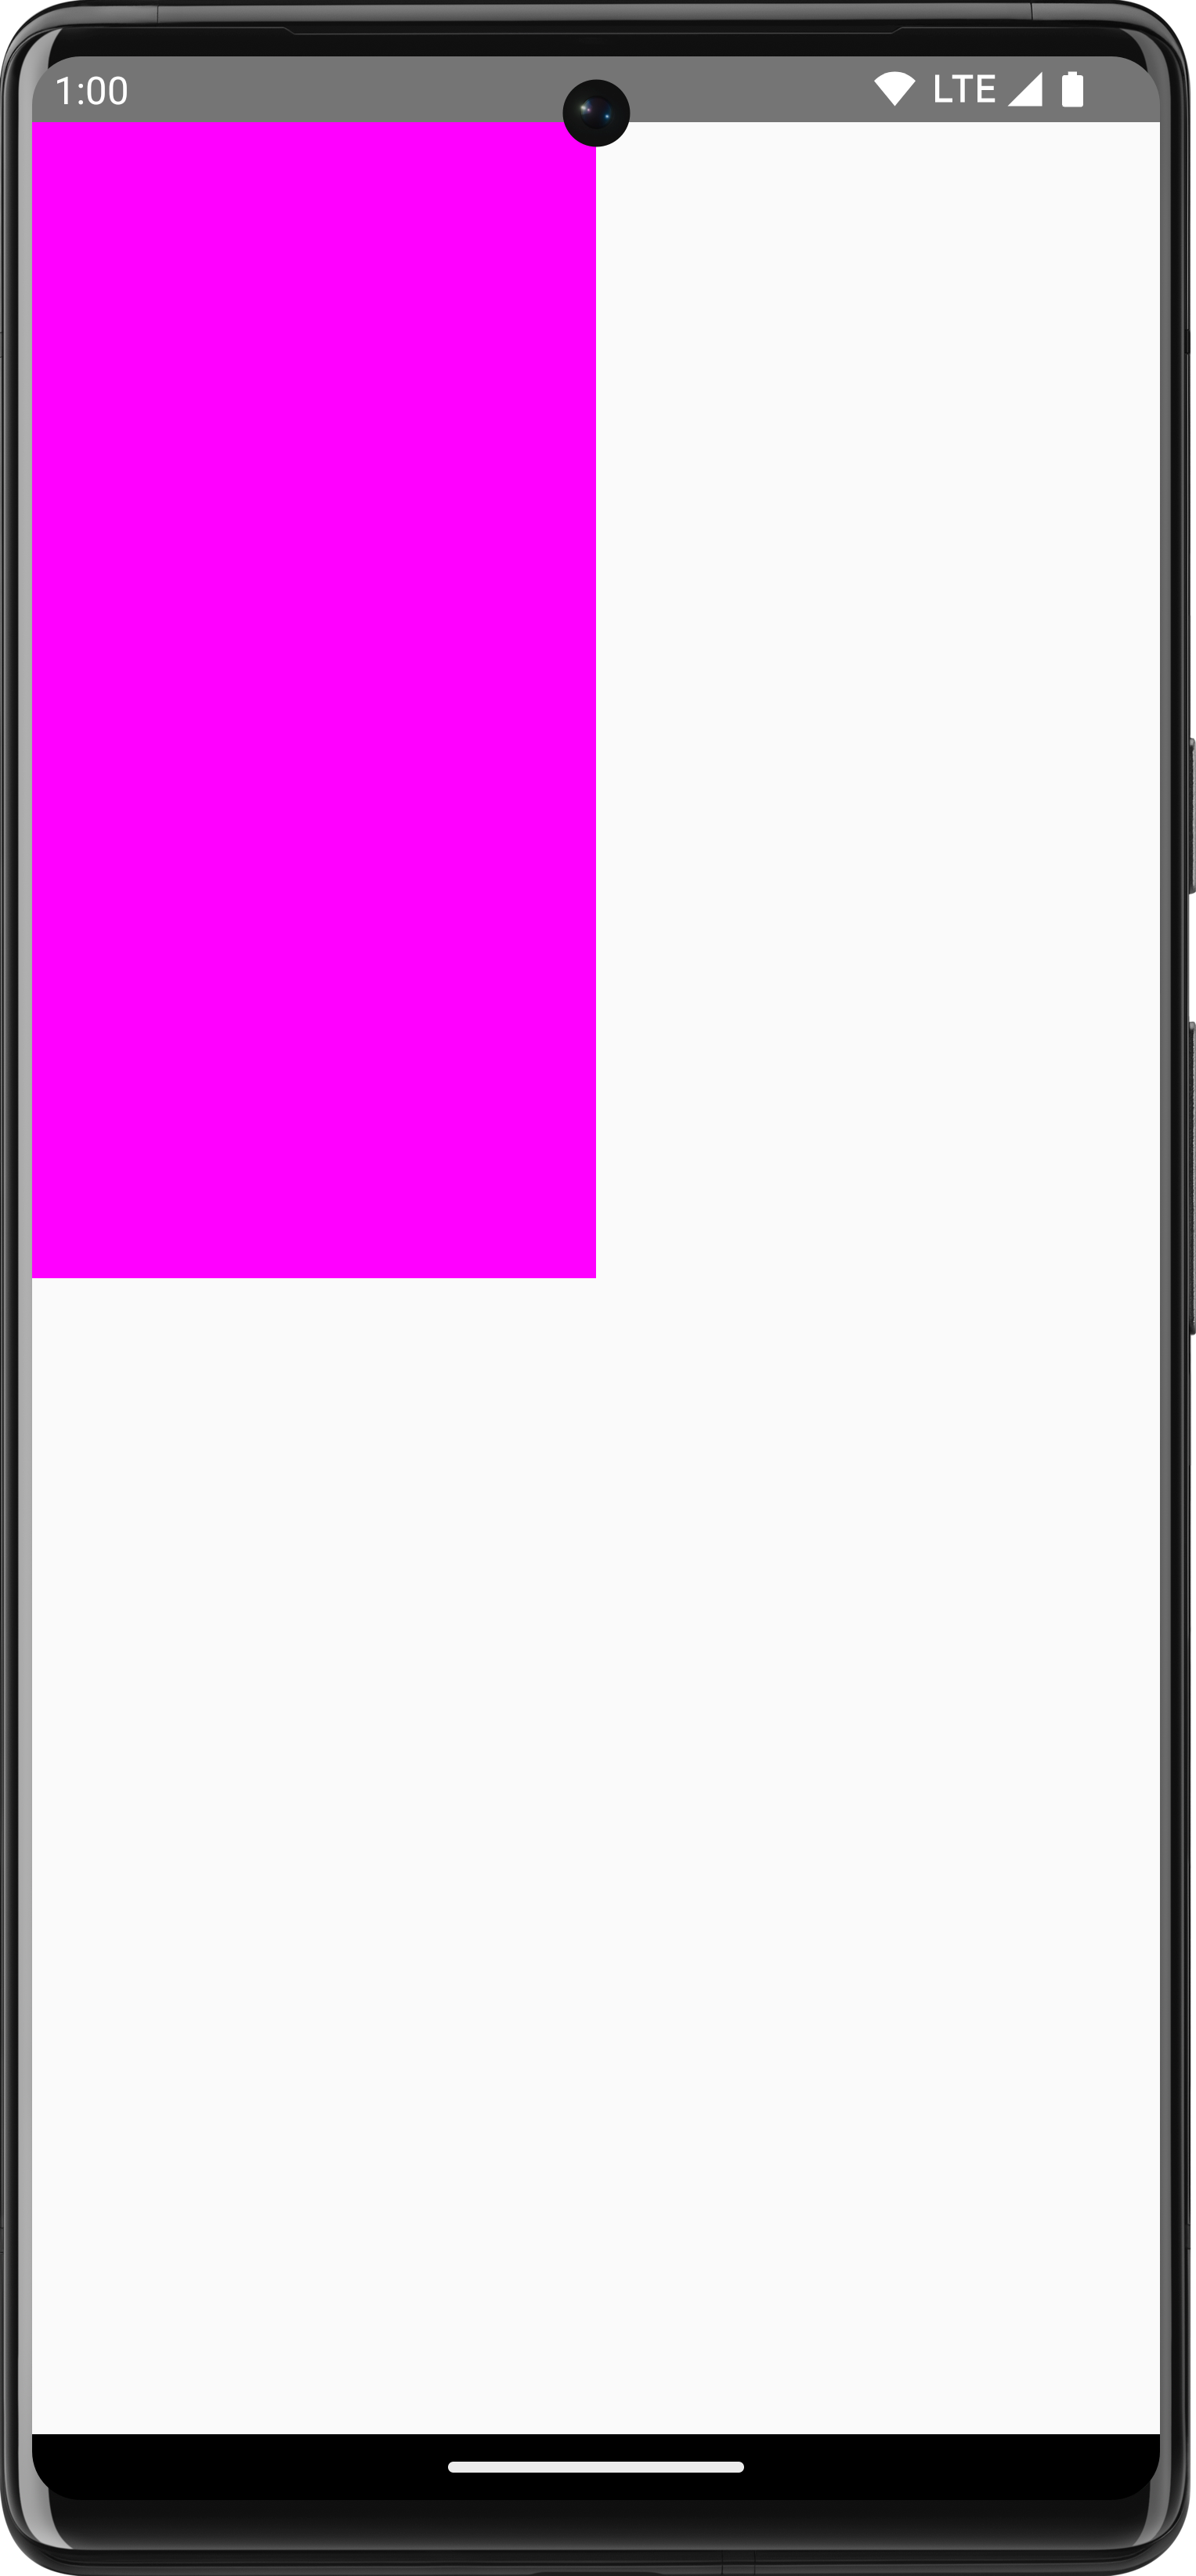 Rectángulo rosa dibujado sobre un fondo blanco que ocupa un cuarto de la pantalla